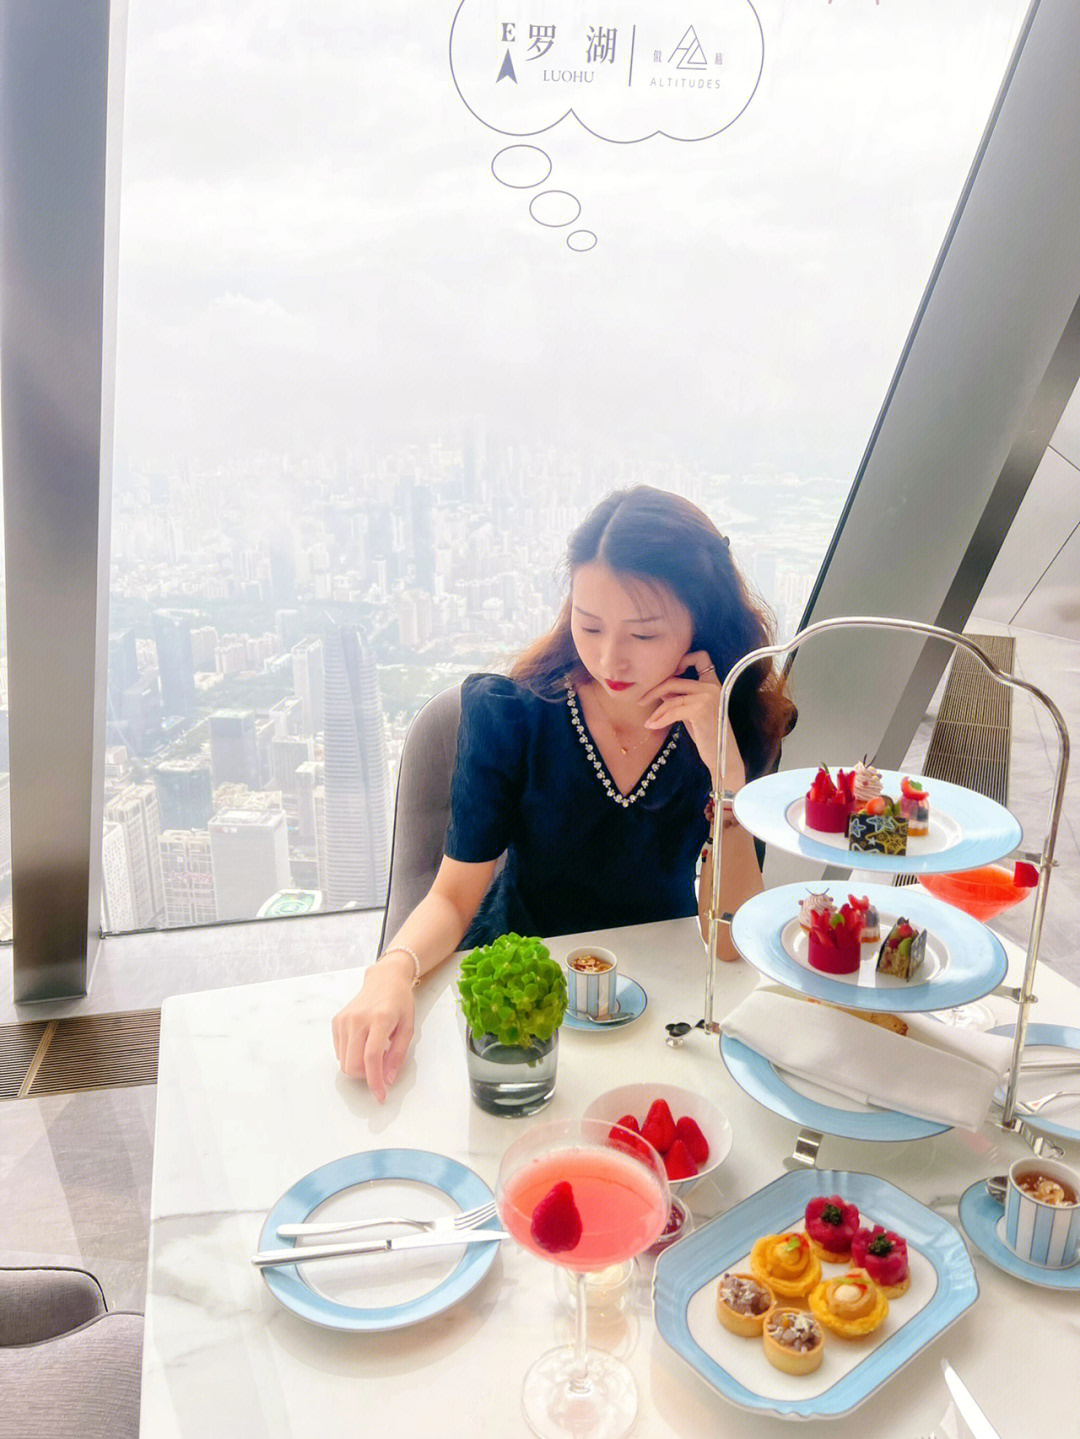 深圳平安大厦最高楼层餐厅118层572米